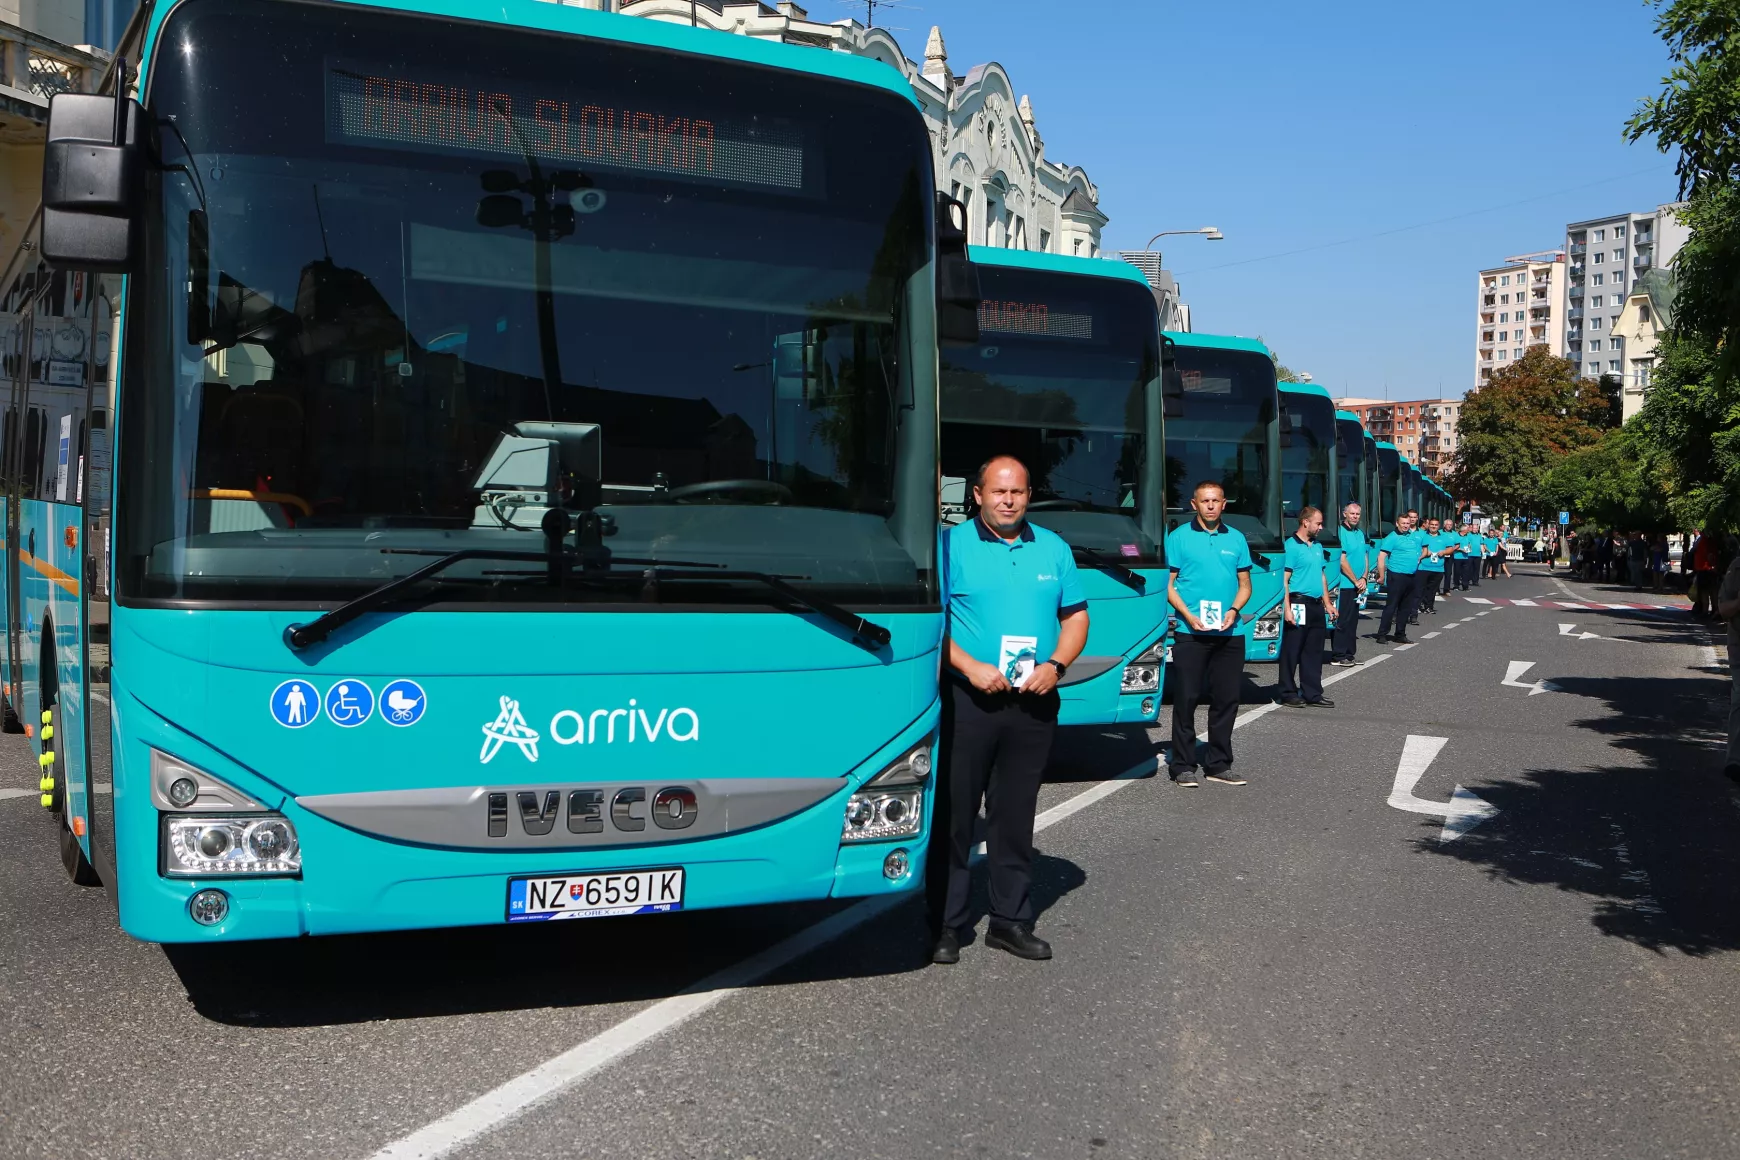 Tavaly Nyitra megyében közel 16 millióan utaztak az ARRIVA buszjáratain, Komárom rekorder  